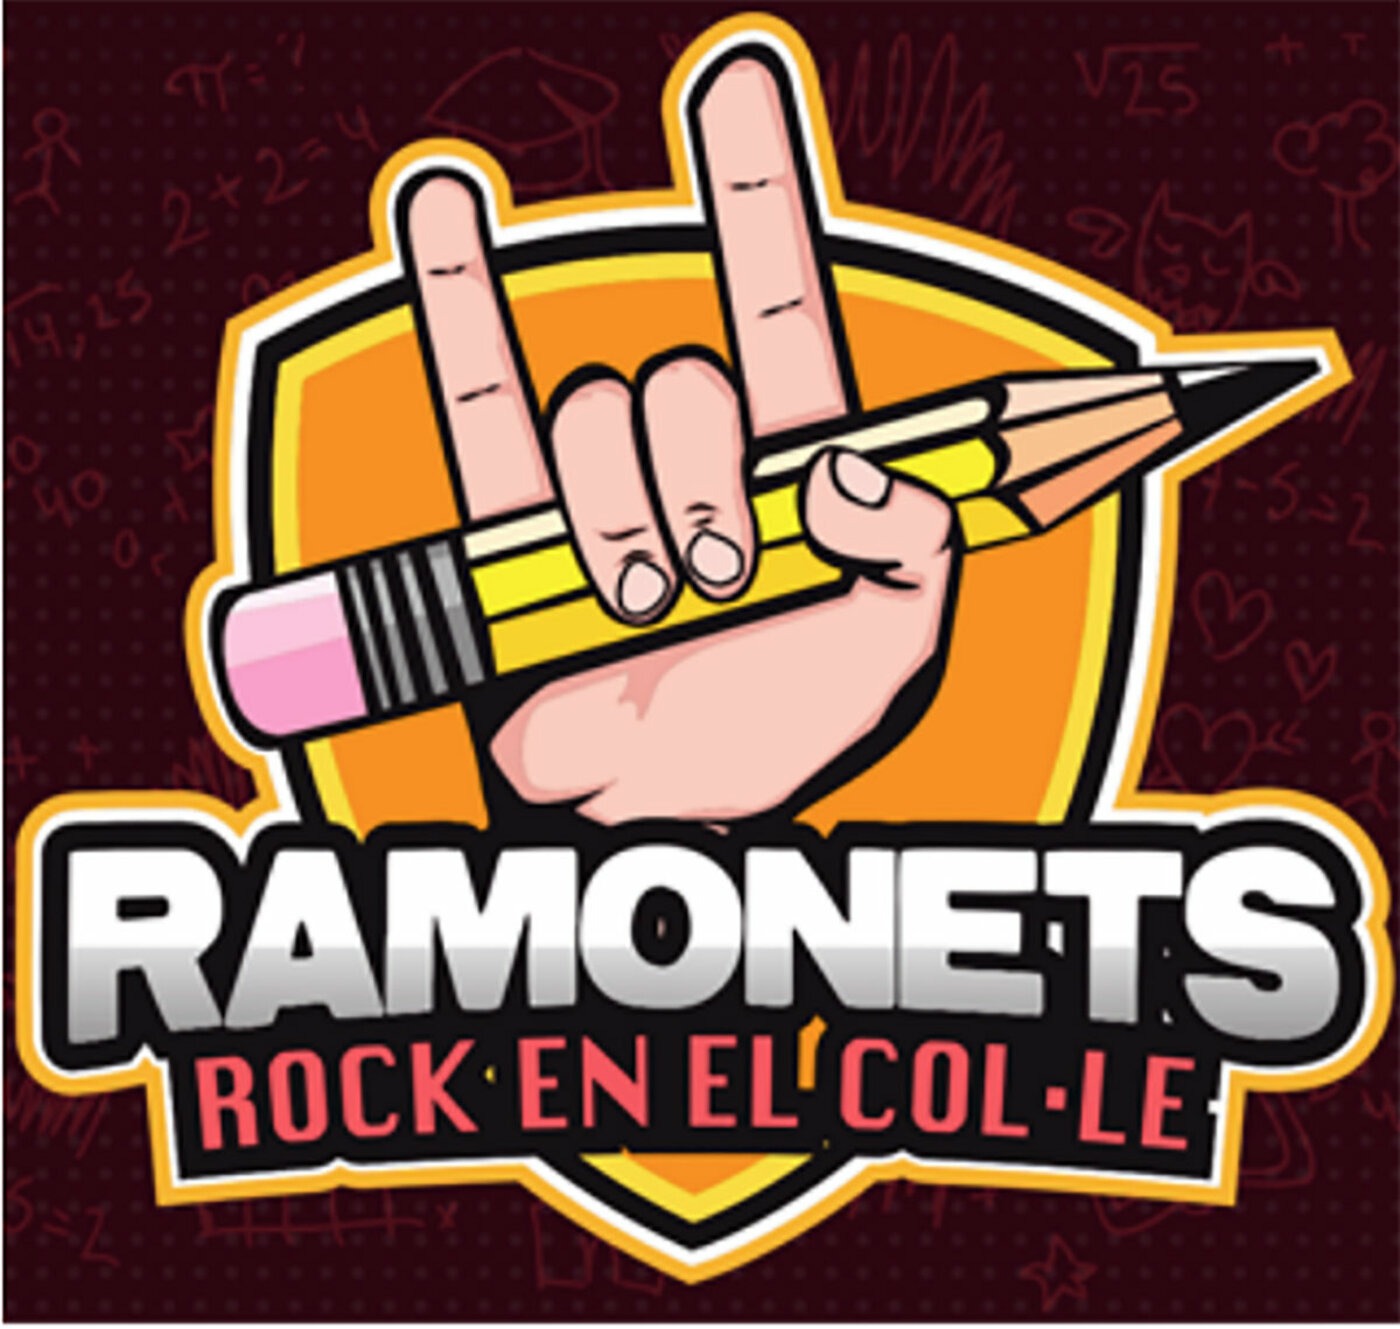 Ramonets - Rock en el col·lee | musica en valencià